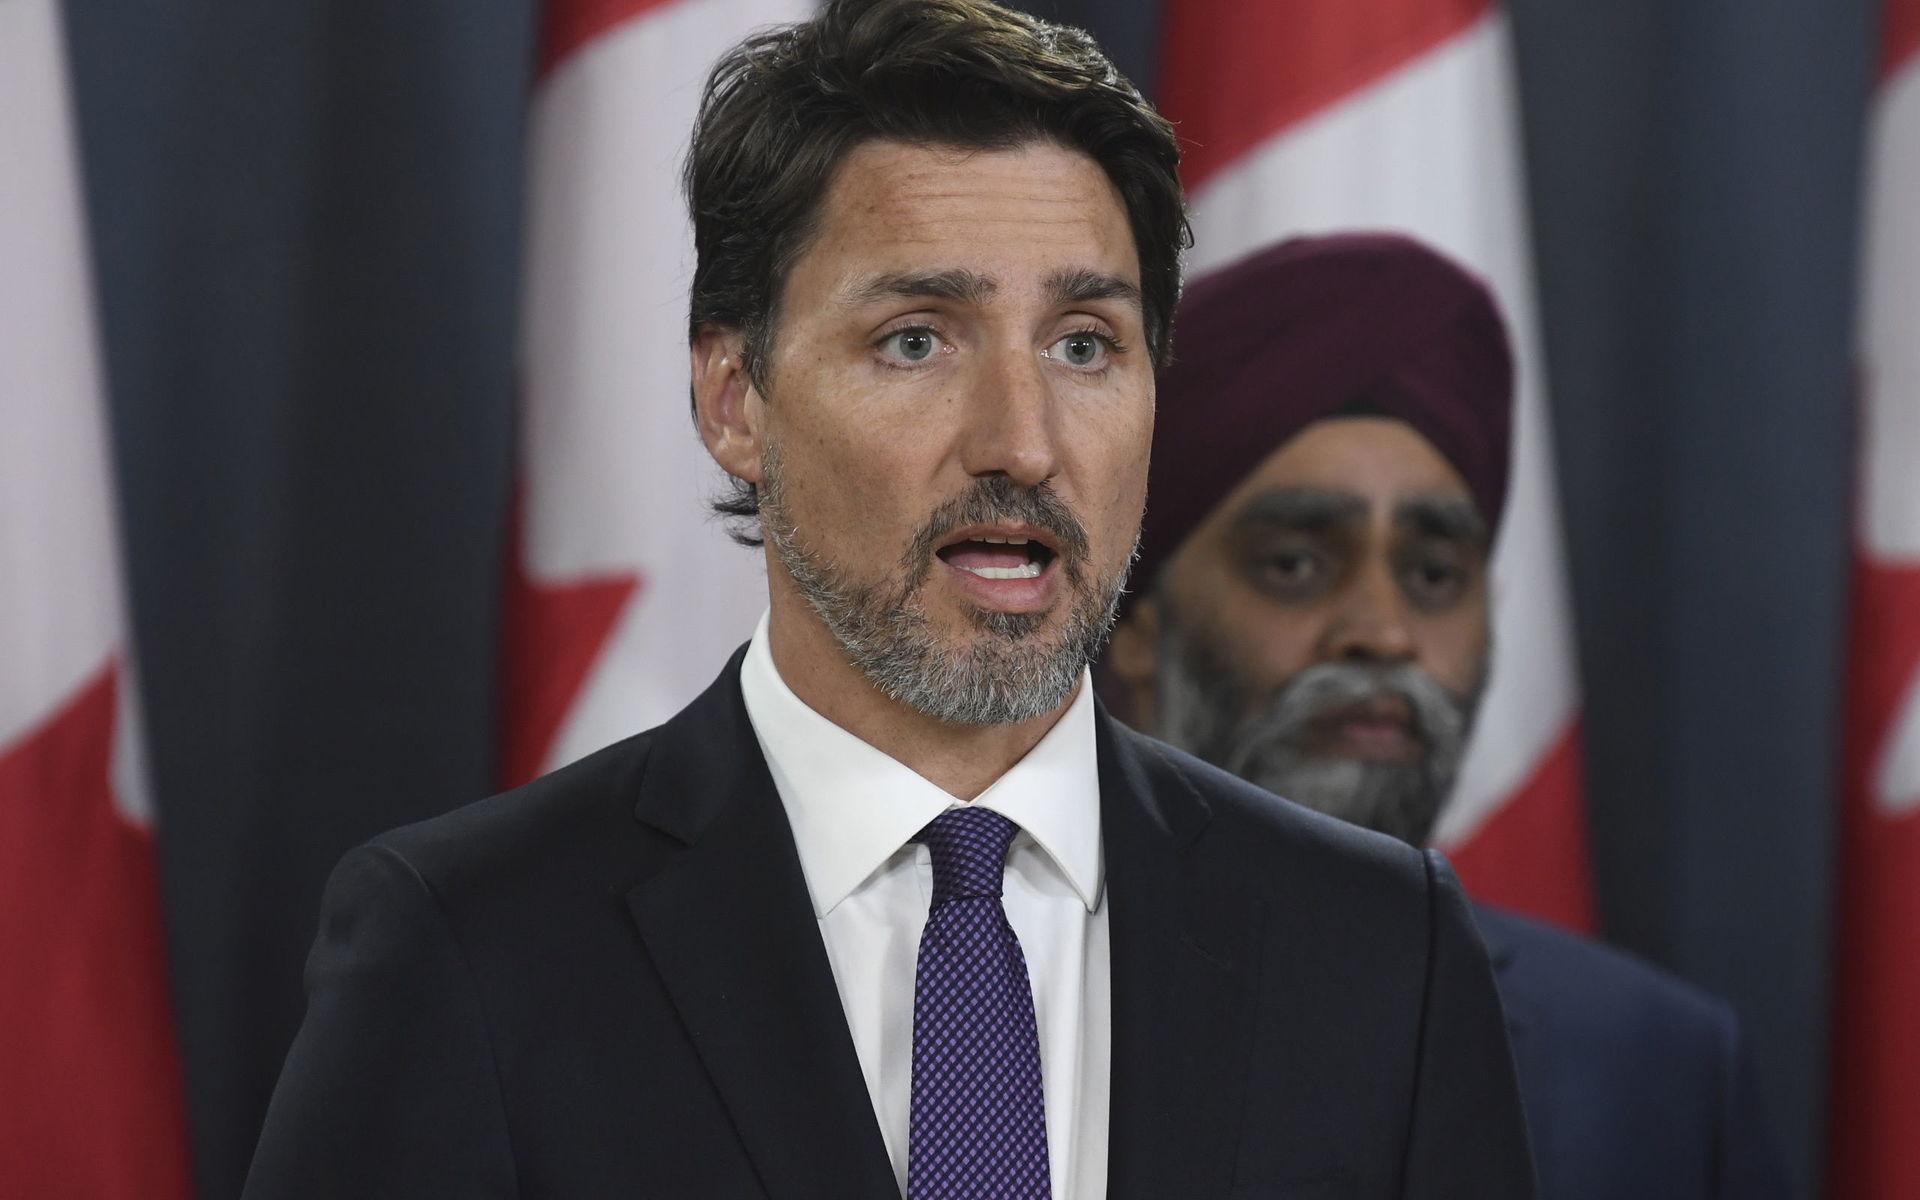 Kanadas premiärminister Justin Trudeau sade på en presskonferens under torsdagen att man hade bevis för att Iran sköt ned planet. 57 kanadensiska medborgare omkom i kraschen.